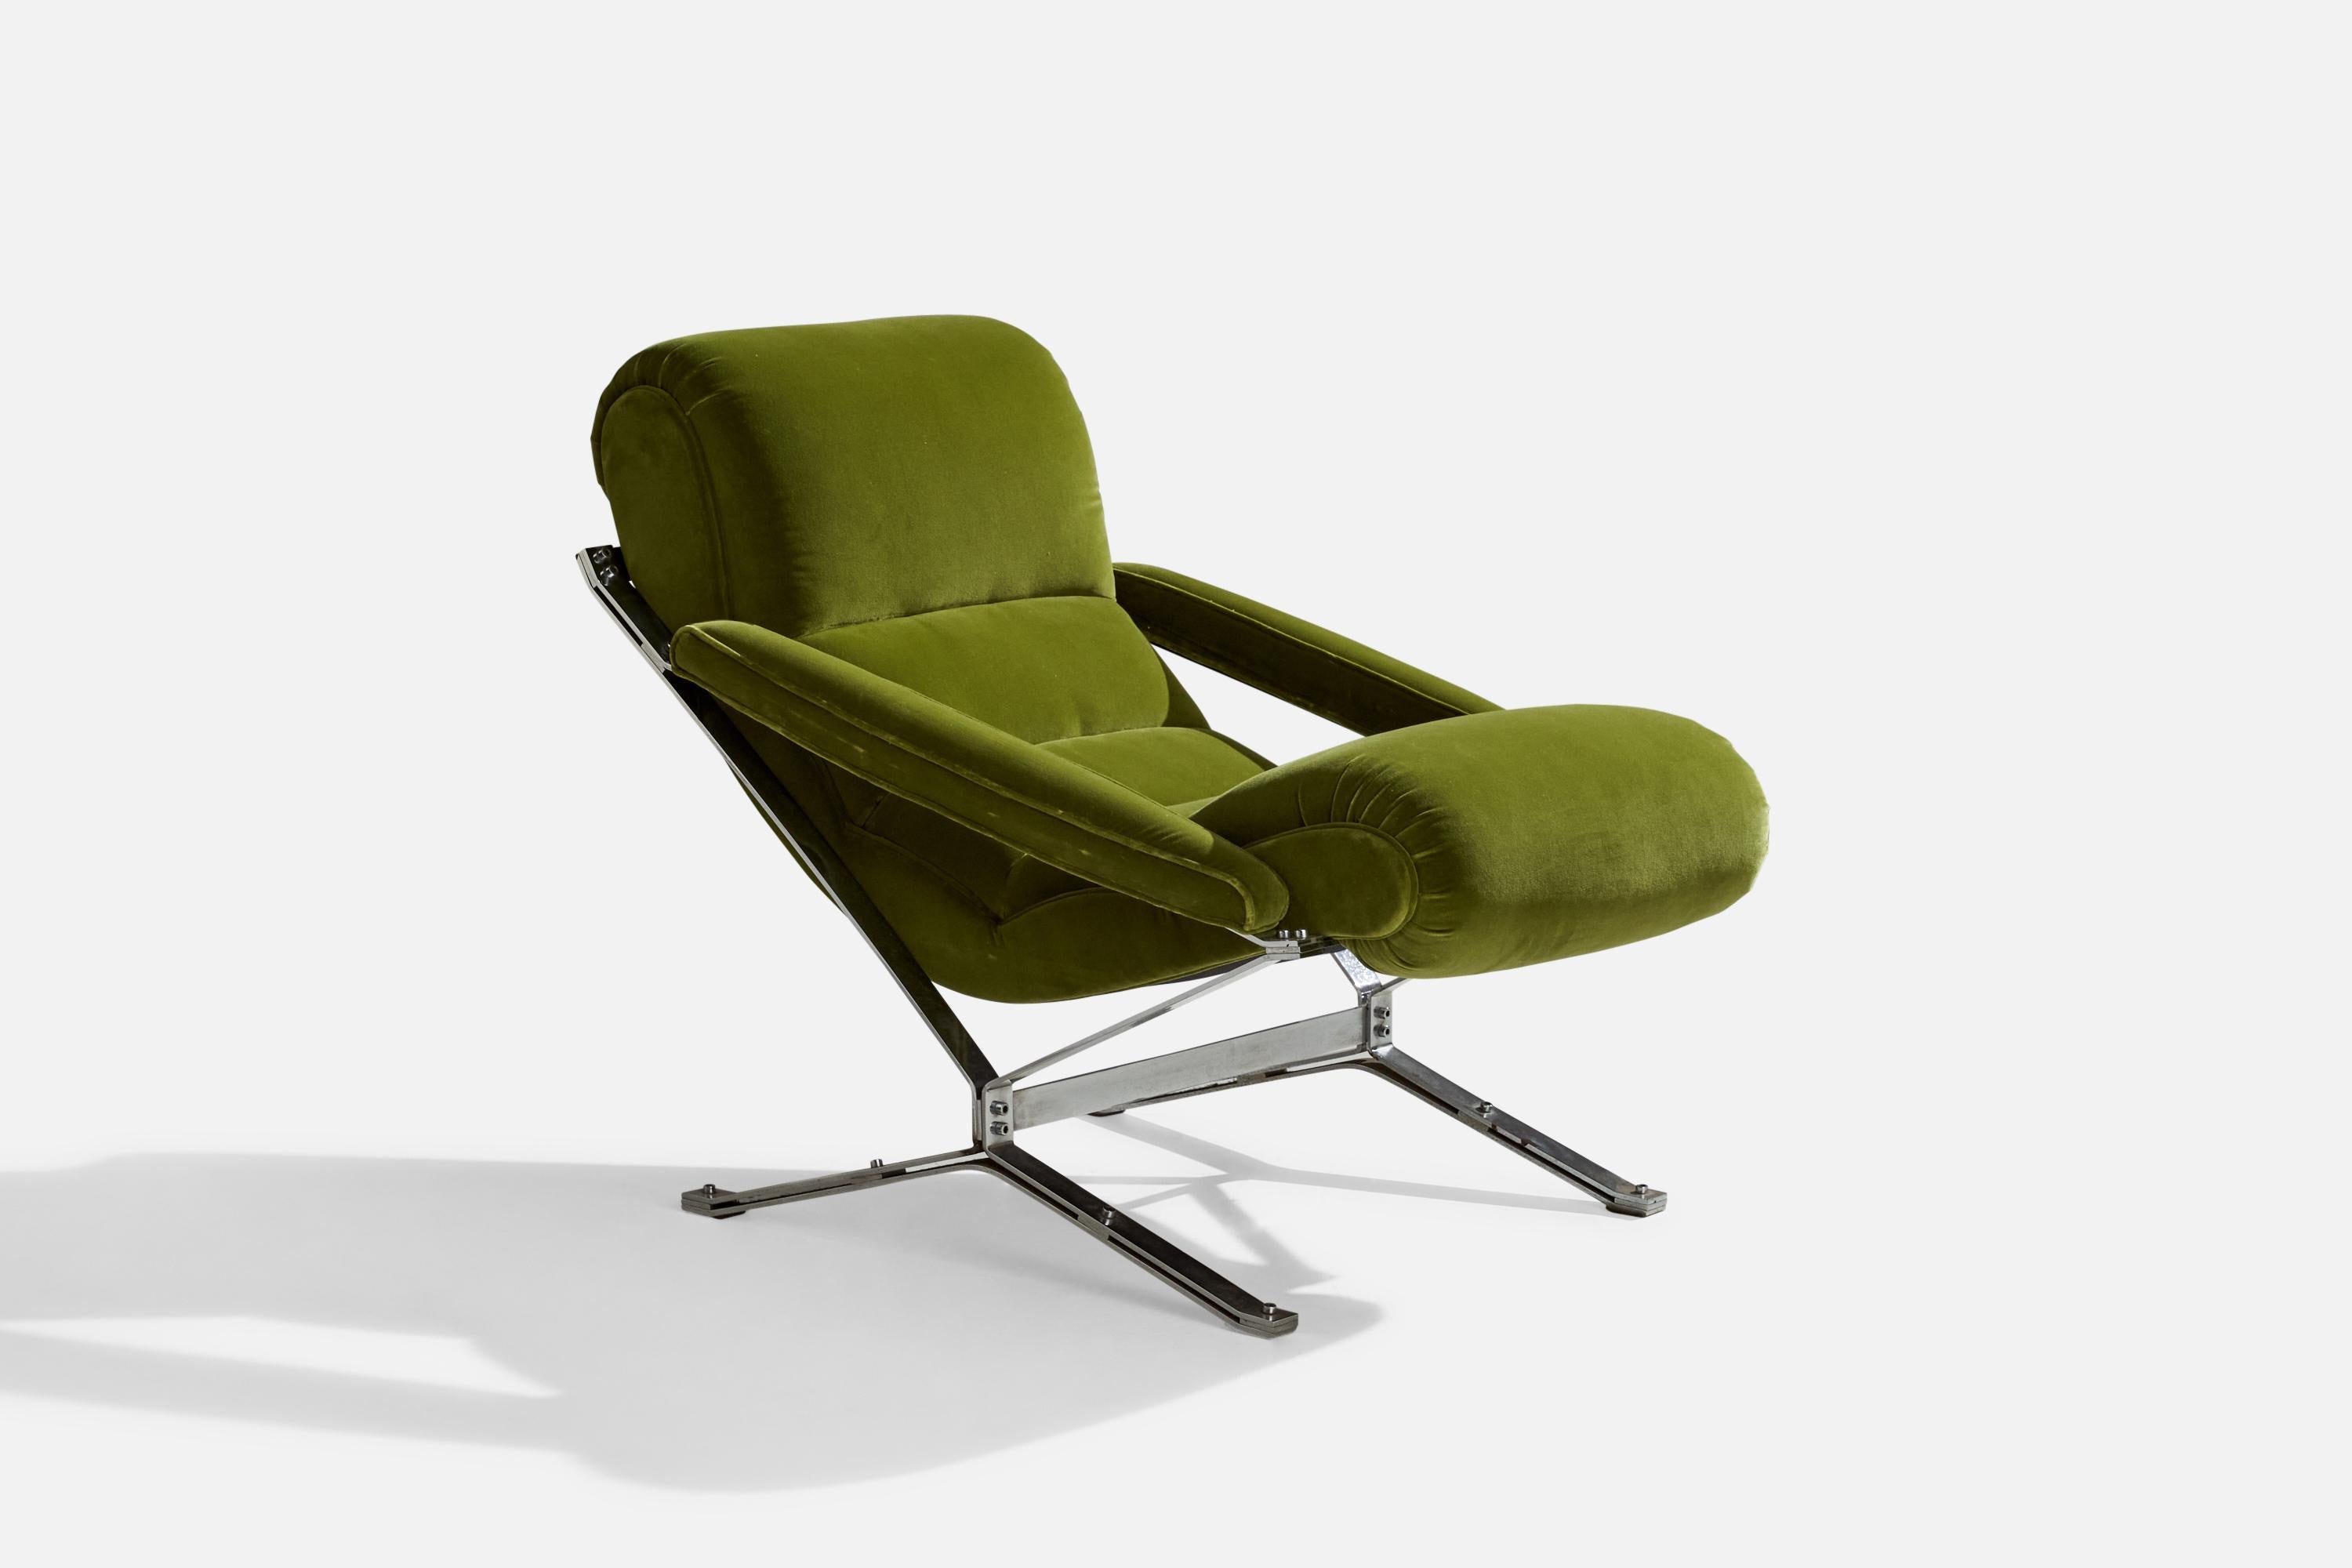 Fauteuil à bascule en métal et velours vert conçu et produit par Giulio Moscatelli, Italie, c. années 1960.

hauteur de l'assise 21